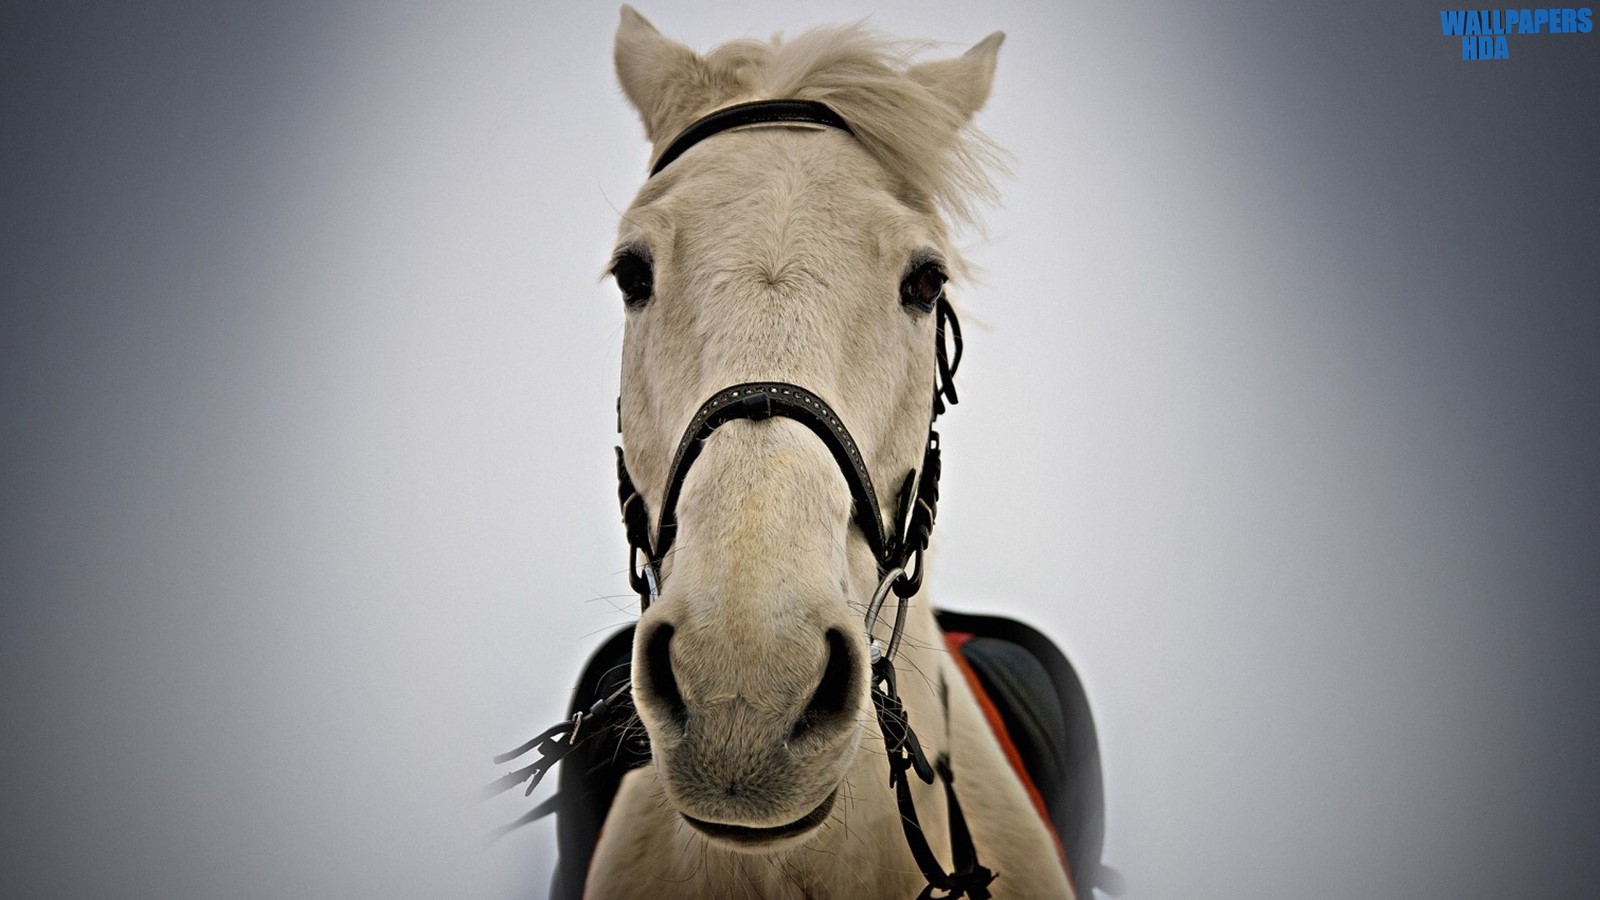 White horse portrait wallpaper 1600x900